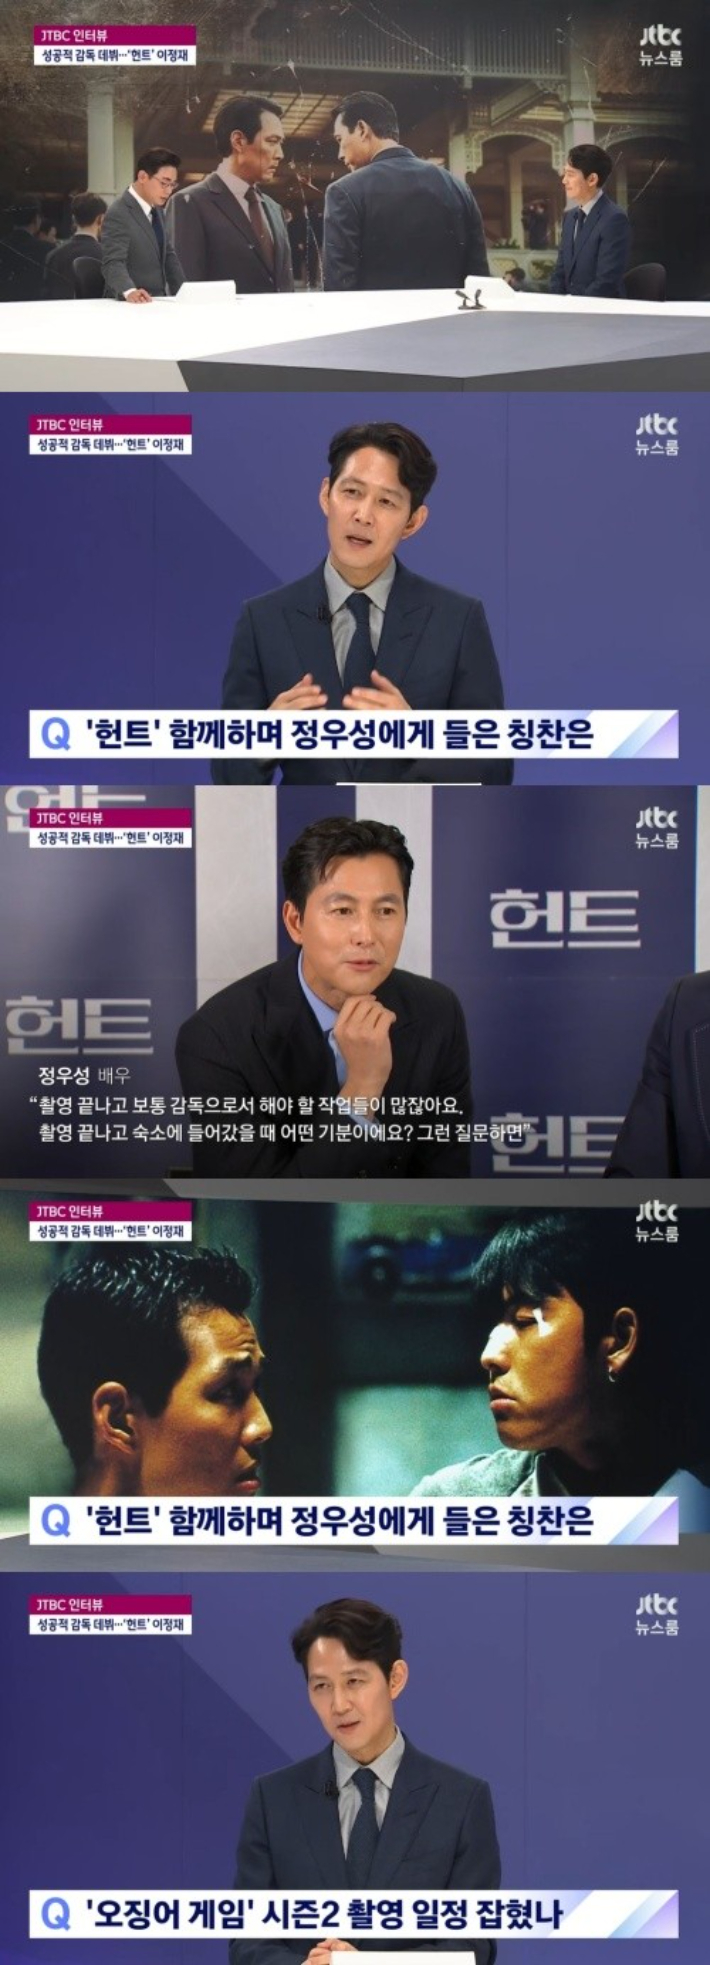 JTBC 뉴스룸 초대석 화면 캡처 